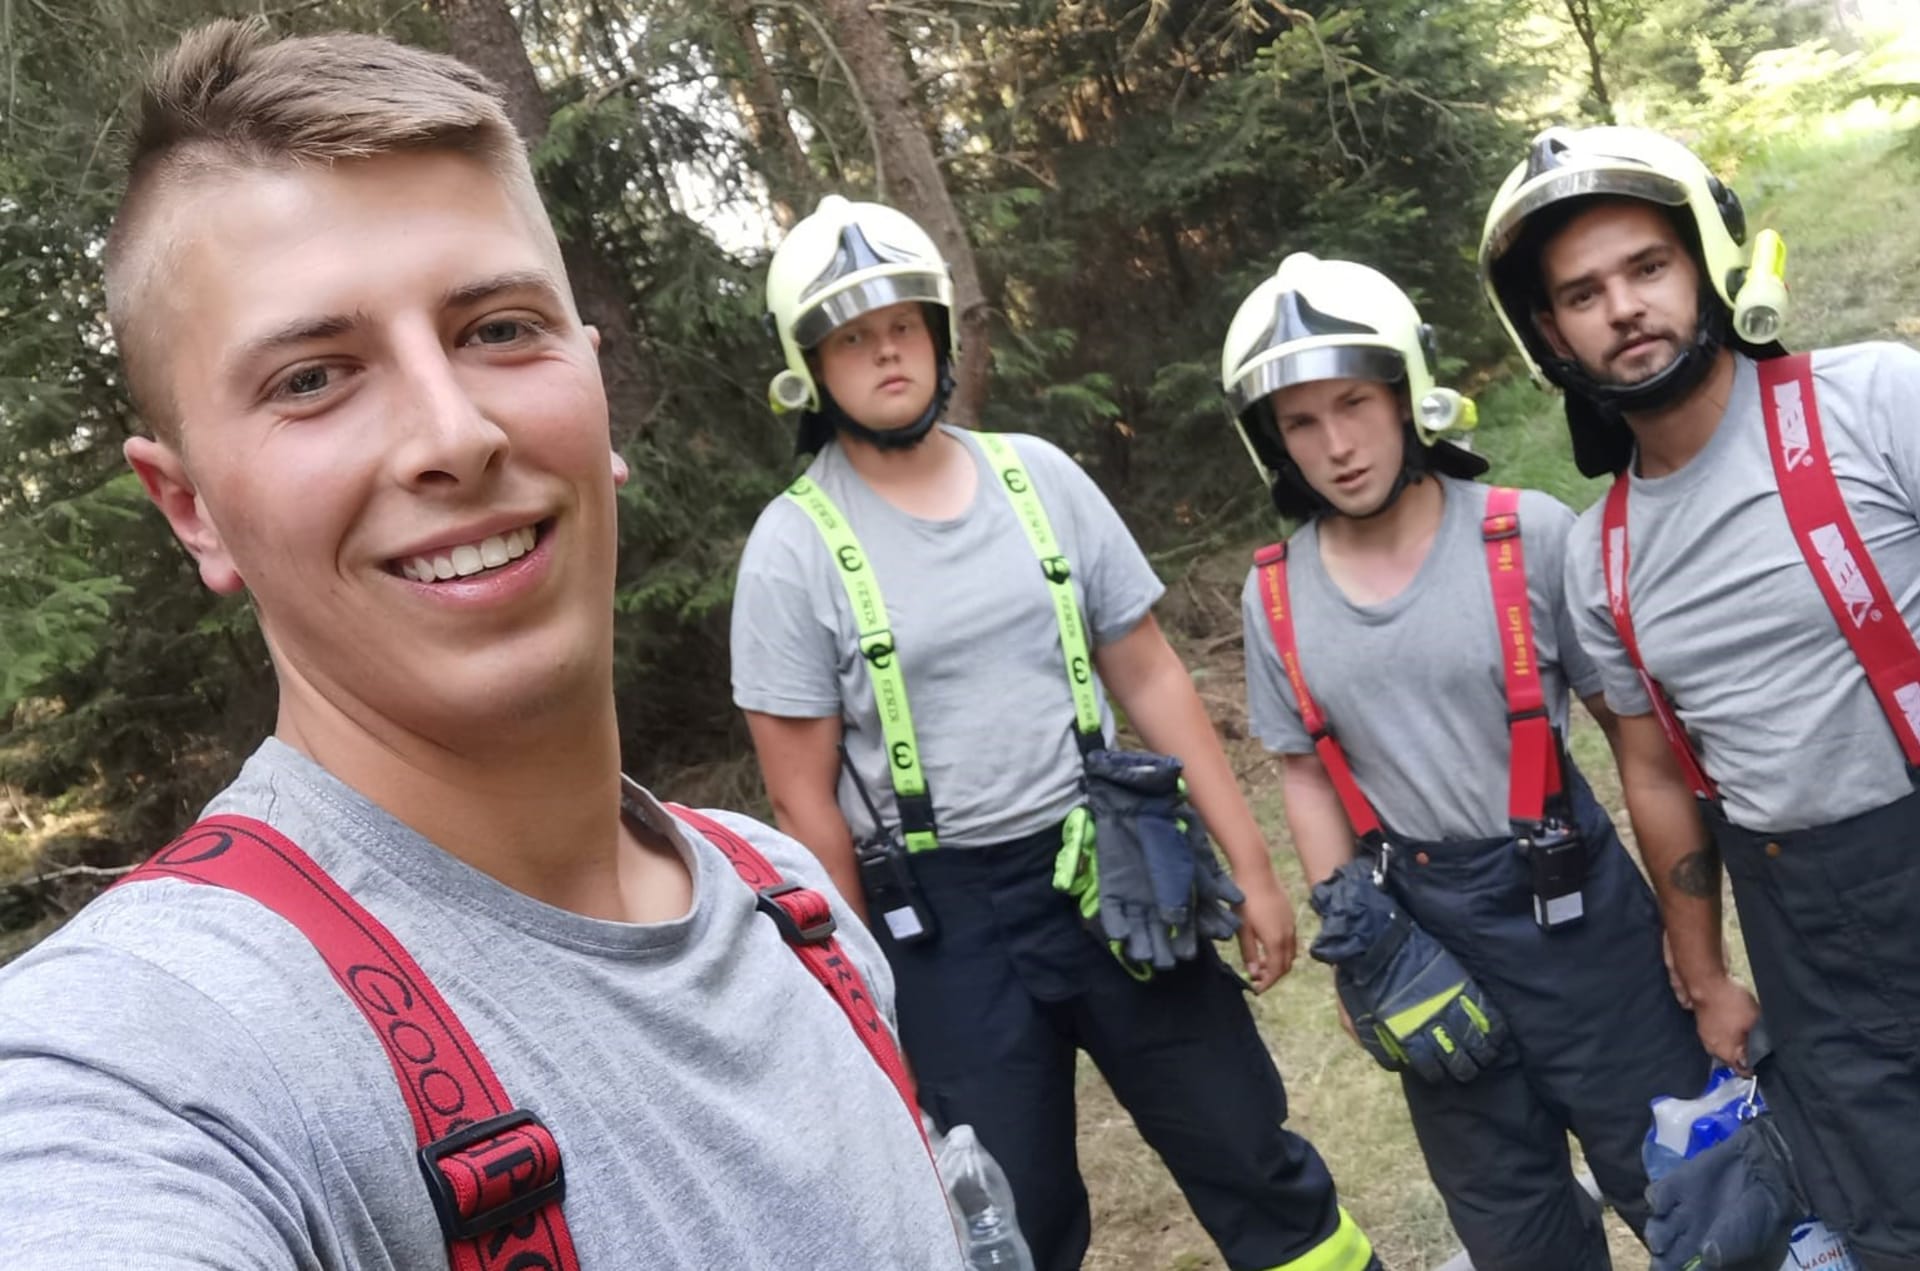 Dobrovolní hasiči z Proboštova se podíleli mimo jiné na krocení požáru v Českém Švýcarsku.